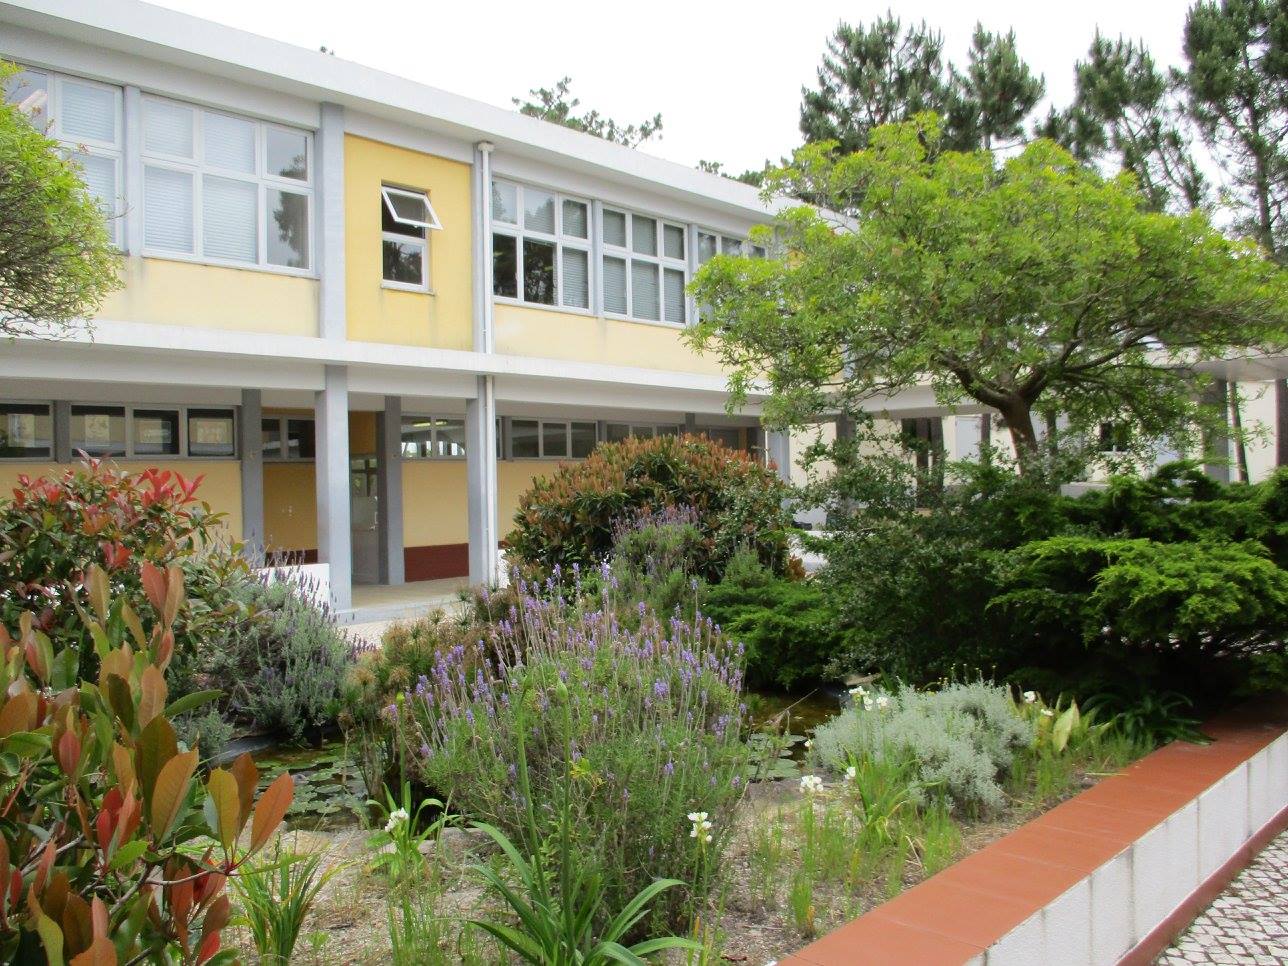 تحفيز الطلاب: دراسة حالة لمدرسة ClassPoint مع Escola Profissional de Penafirme في توريس فيدراس ، البرتغال